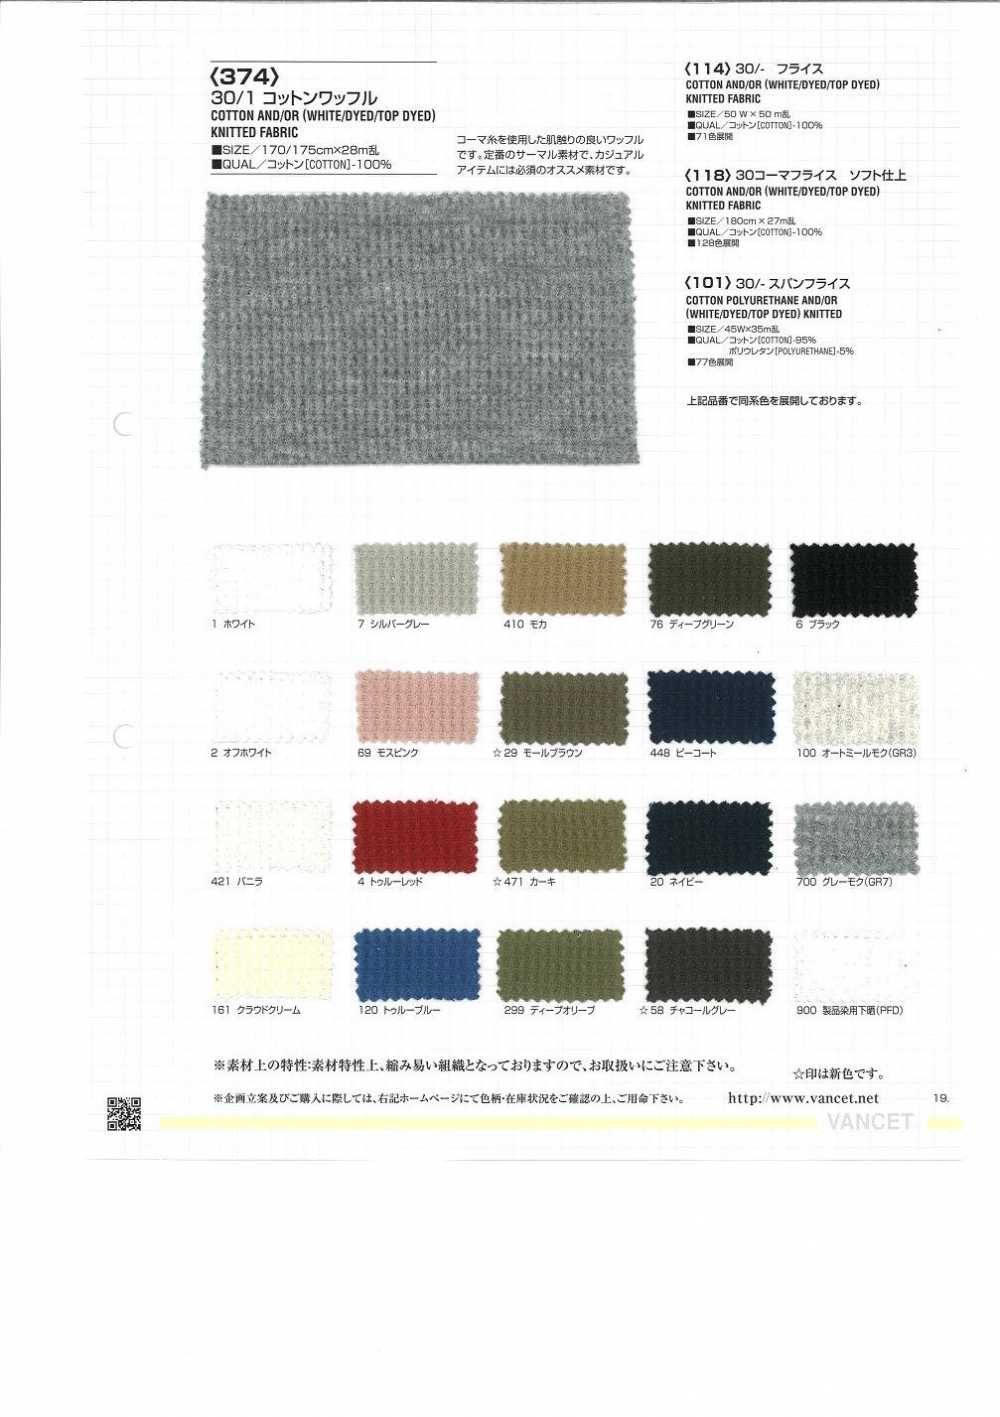 374 30/1 Cotton Waffle Knit[Textile / Fabric] VANCET